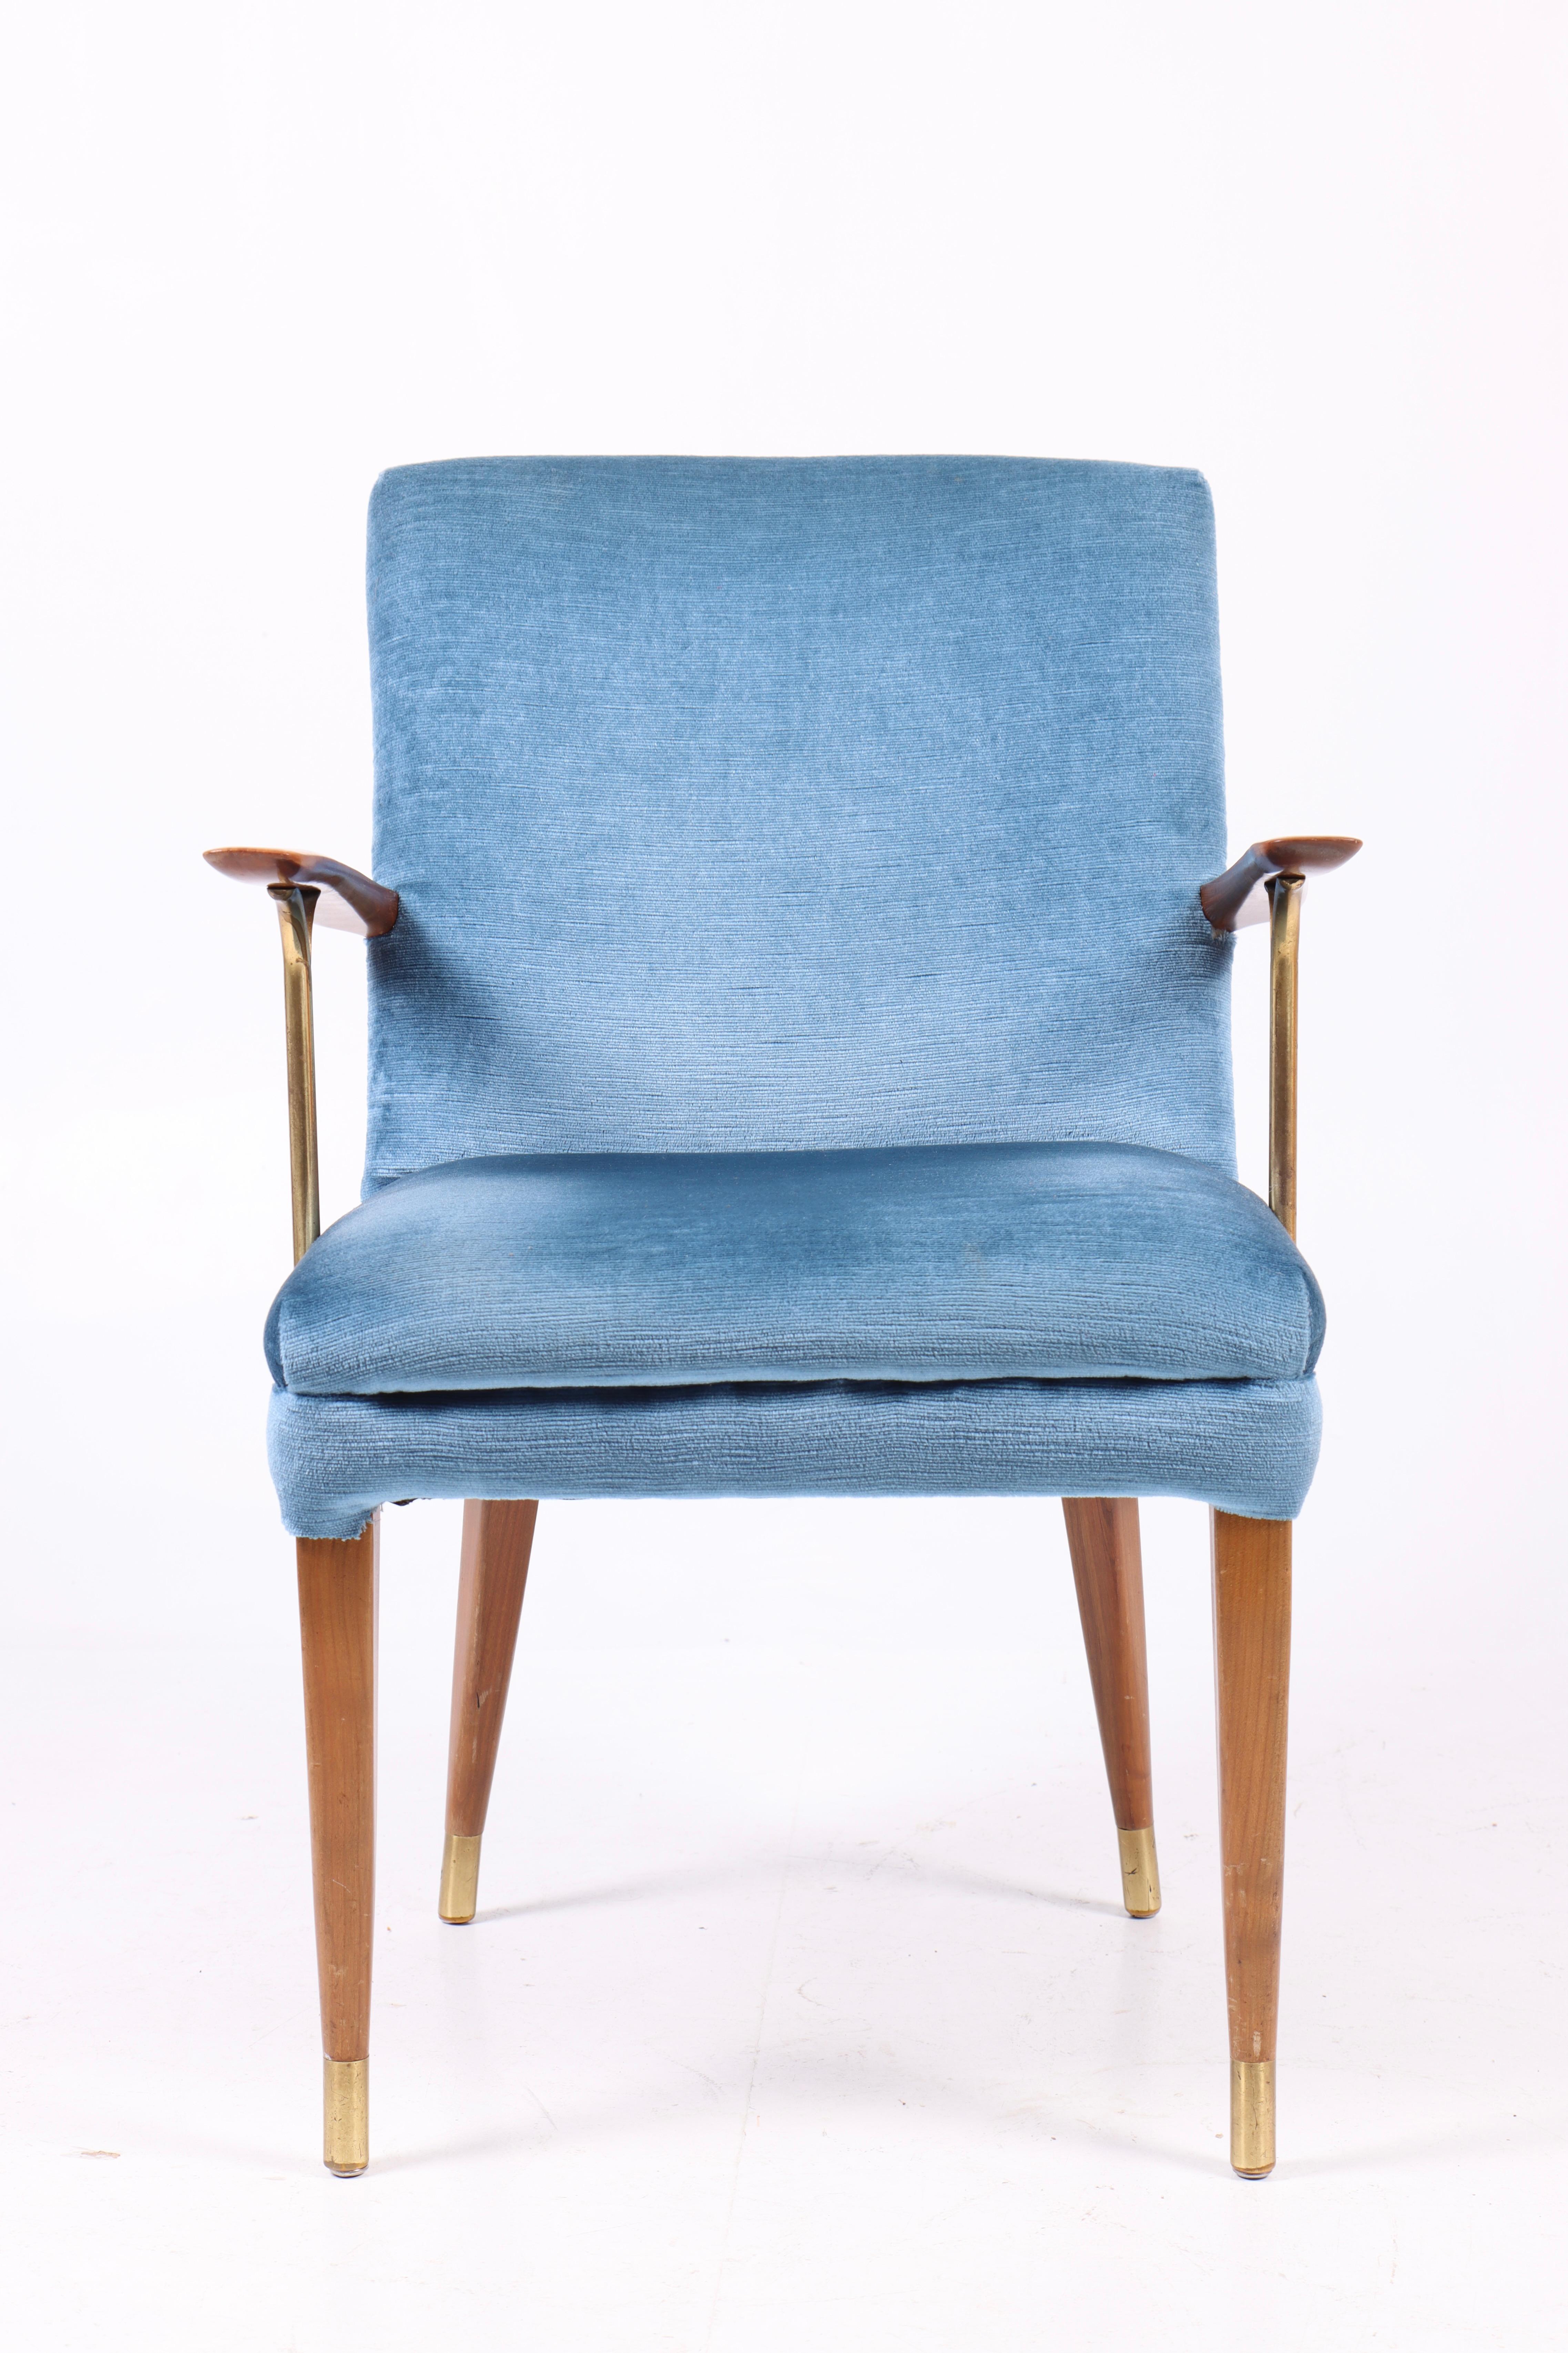 Sessel aus Stoff mit Messingdetails. Entworfen und hergestellt in Schweden in den 1950er Jahren.